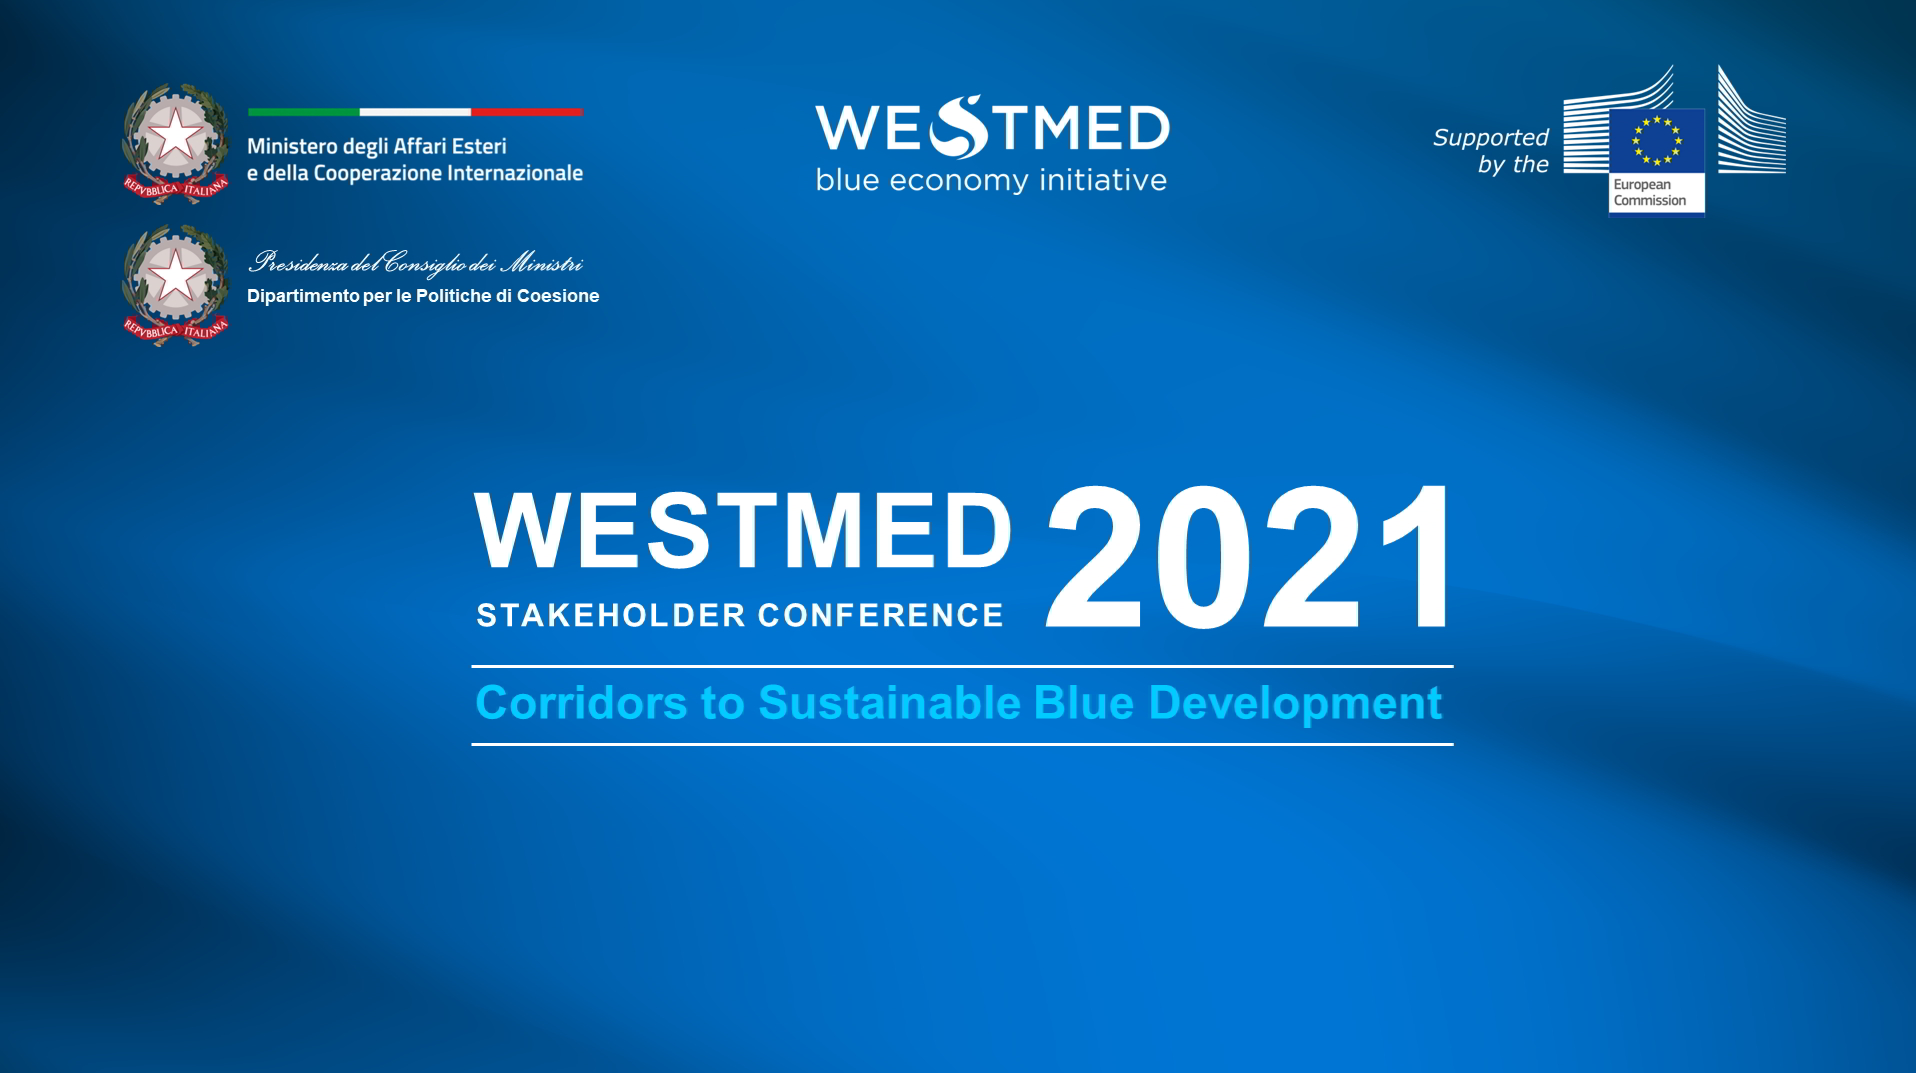 image-first-slide-westmed-conference-2021